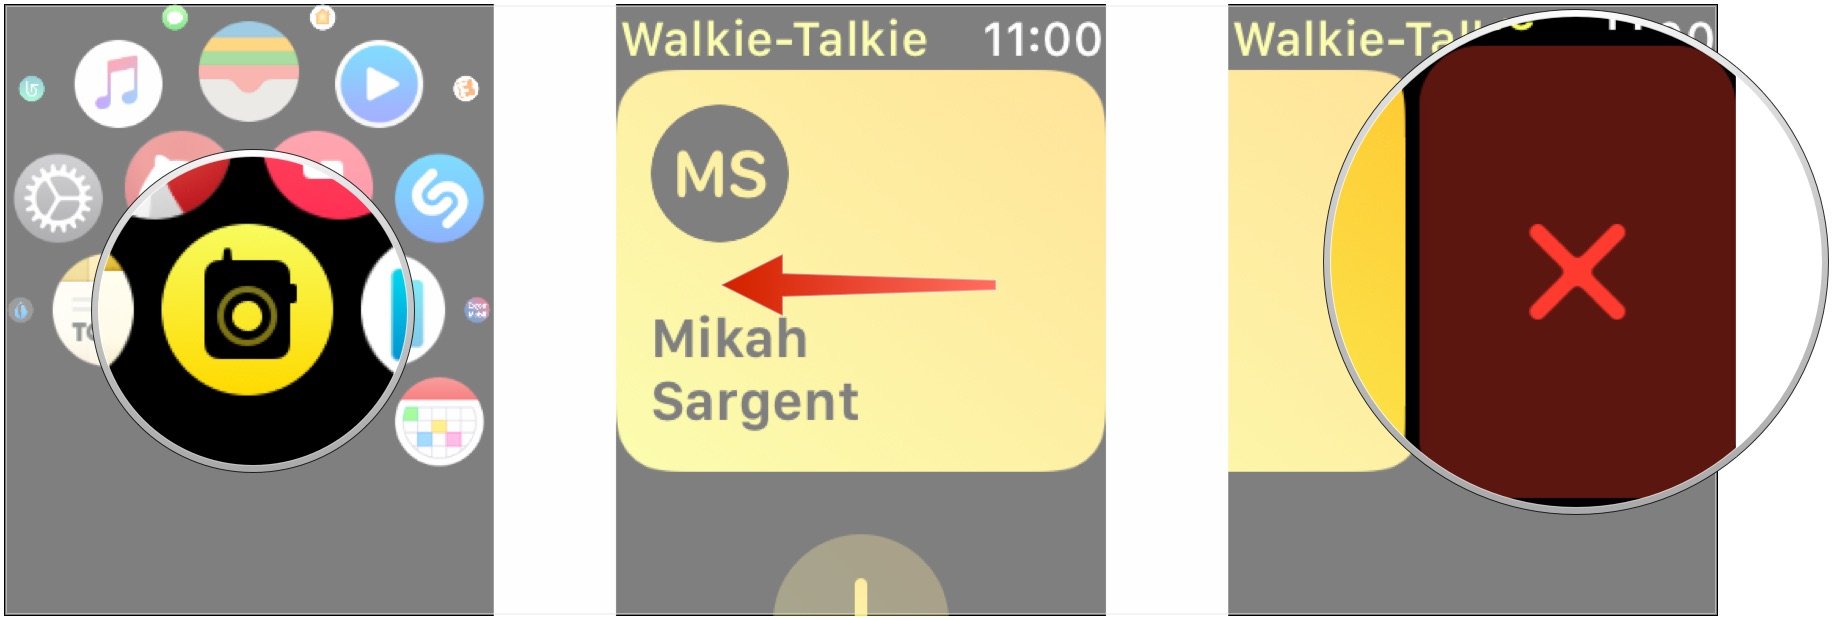 Open Walkie-Talkie, swipe left on contact, tap X